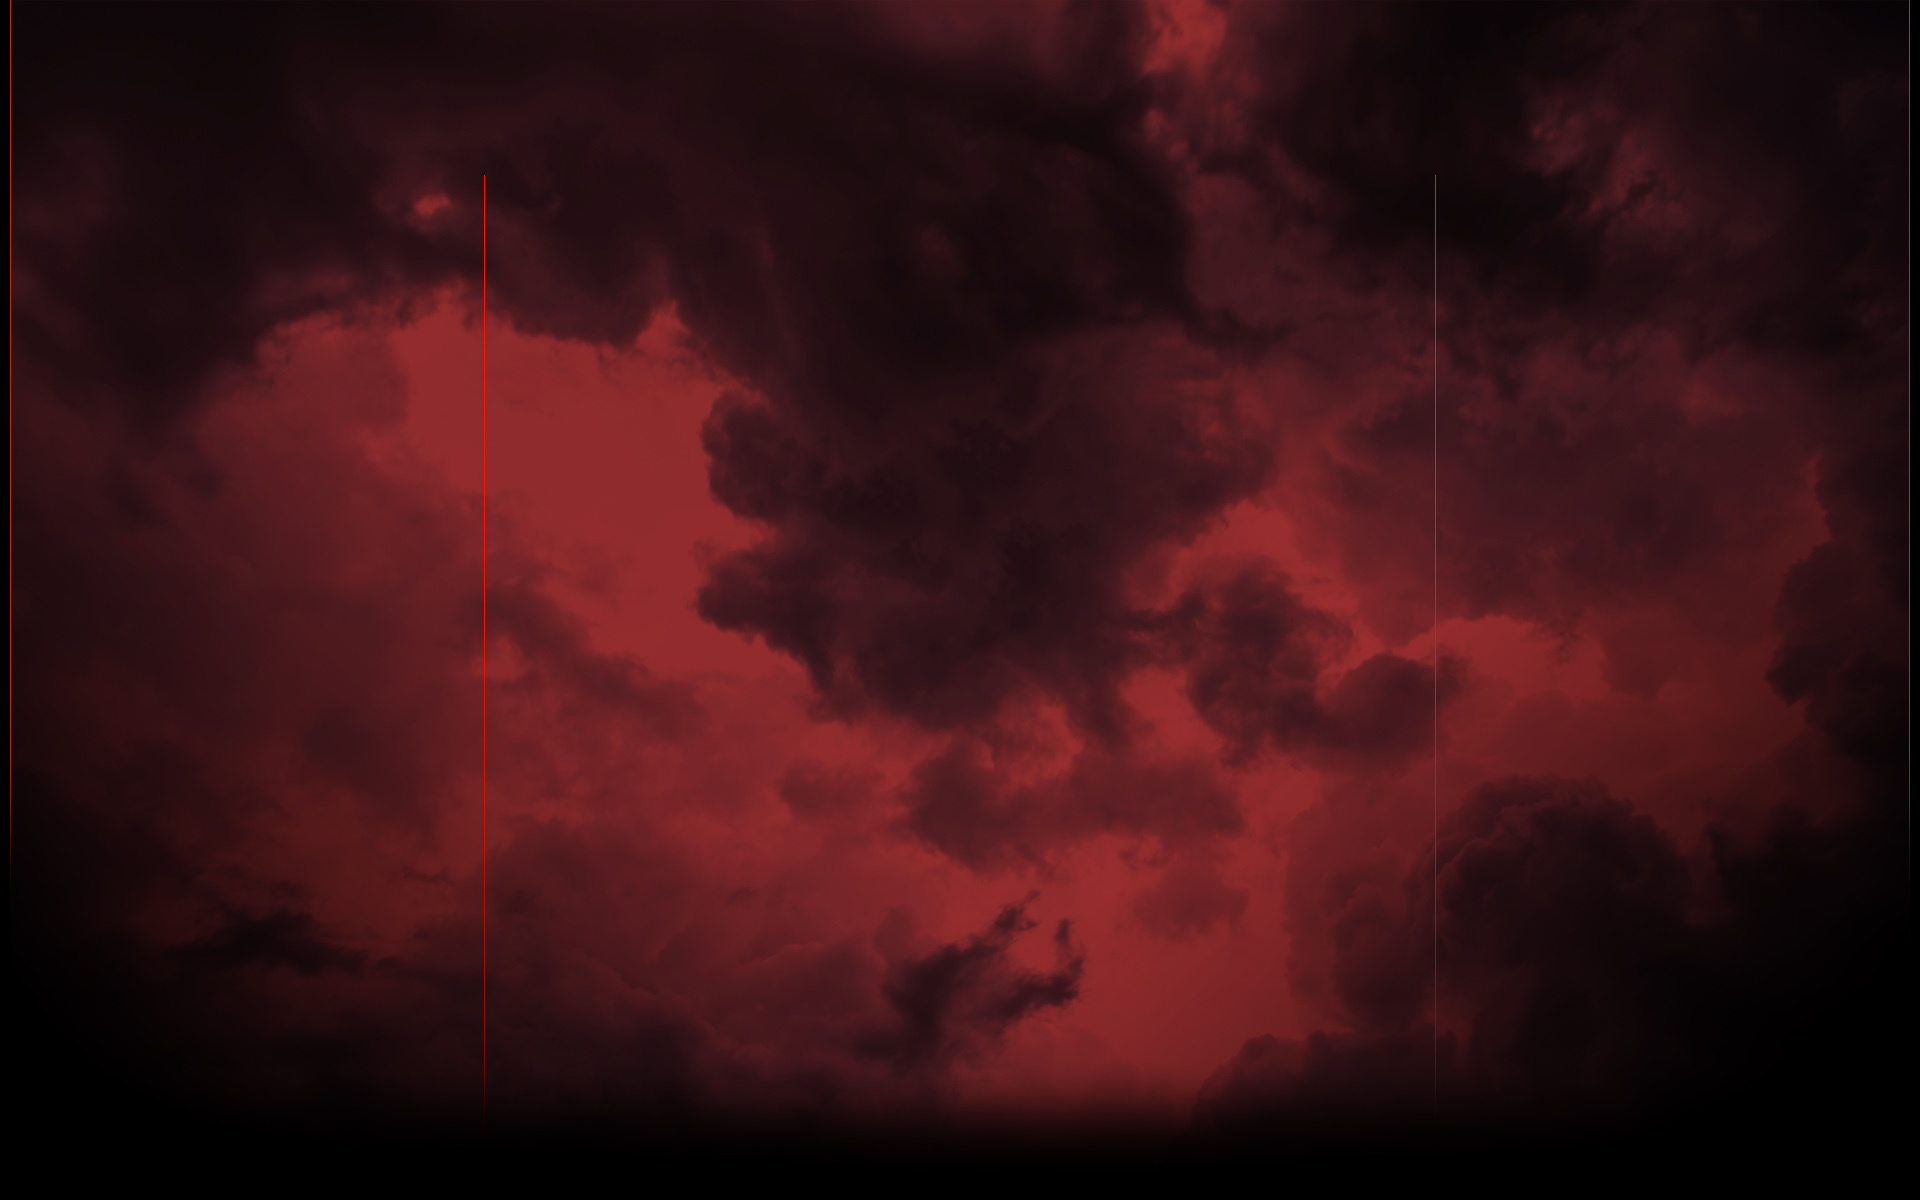 Mây đỏ là một hiện tượng hiếm gặp trên bầu trời. Hãy tận hưởng màn trình diễn độc đáo này và thư giãn cùng hình ảnh đẹp.